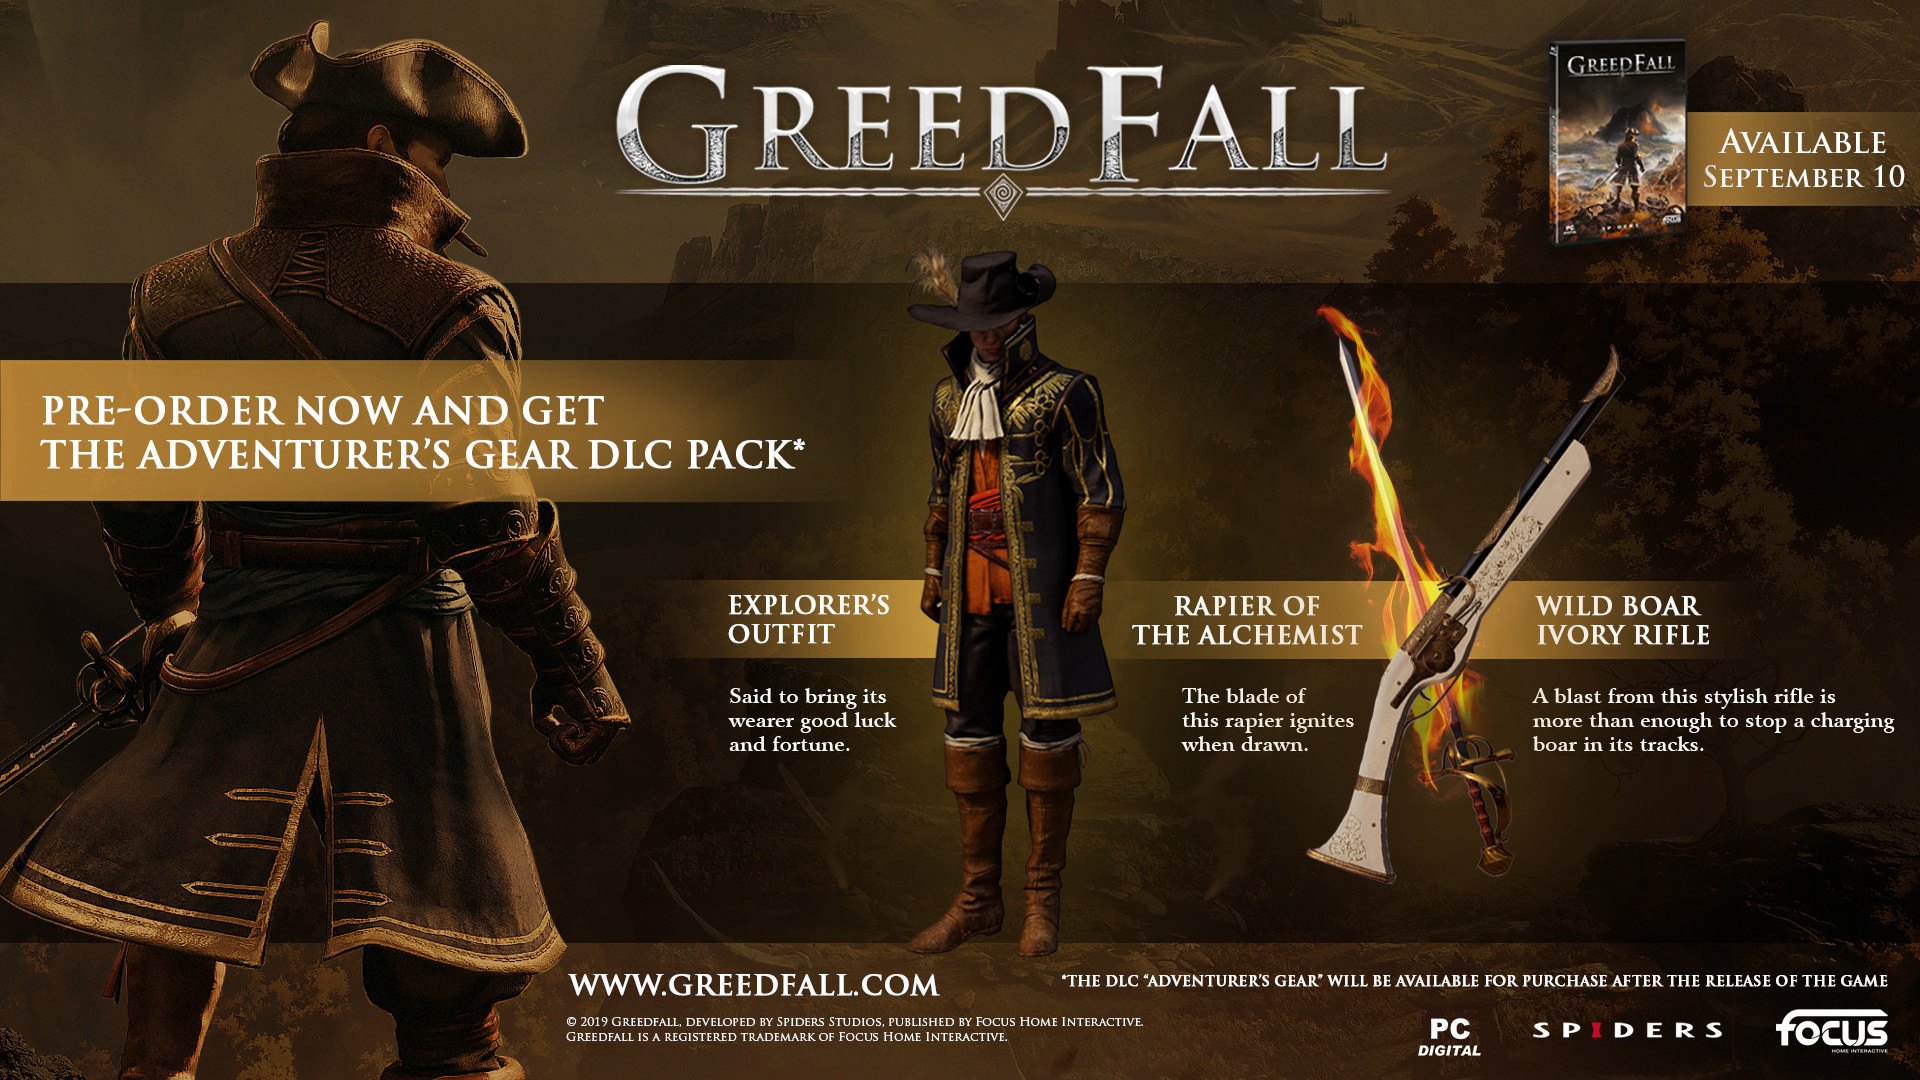 GreedFall Gold Edition EU XBOX One CD Key